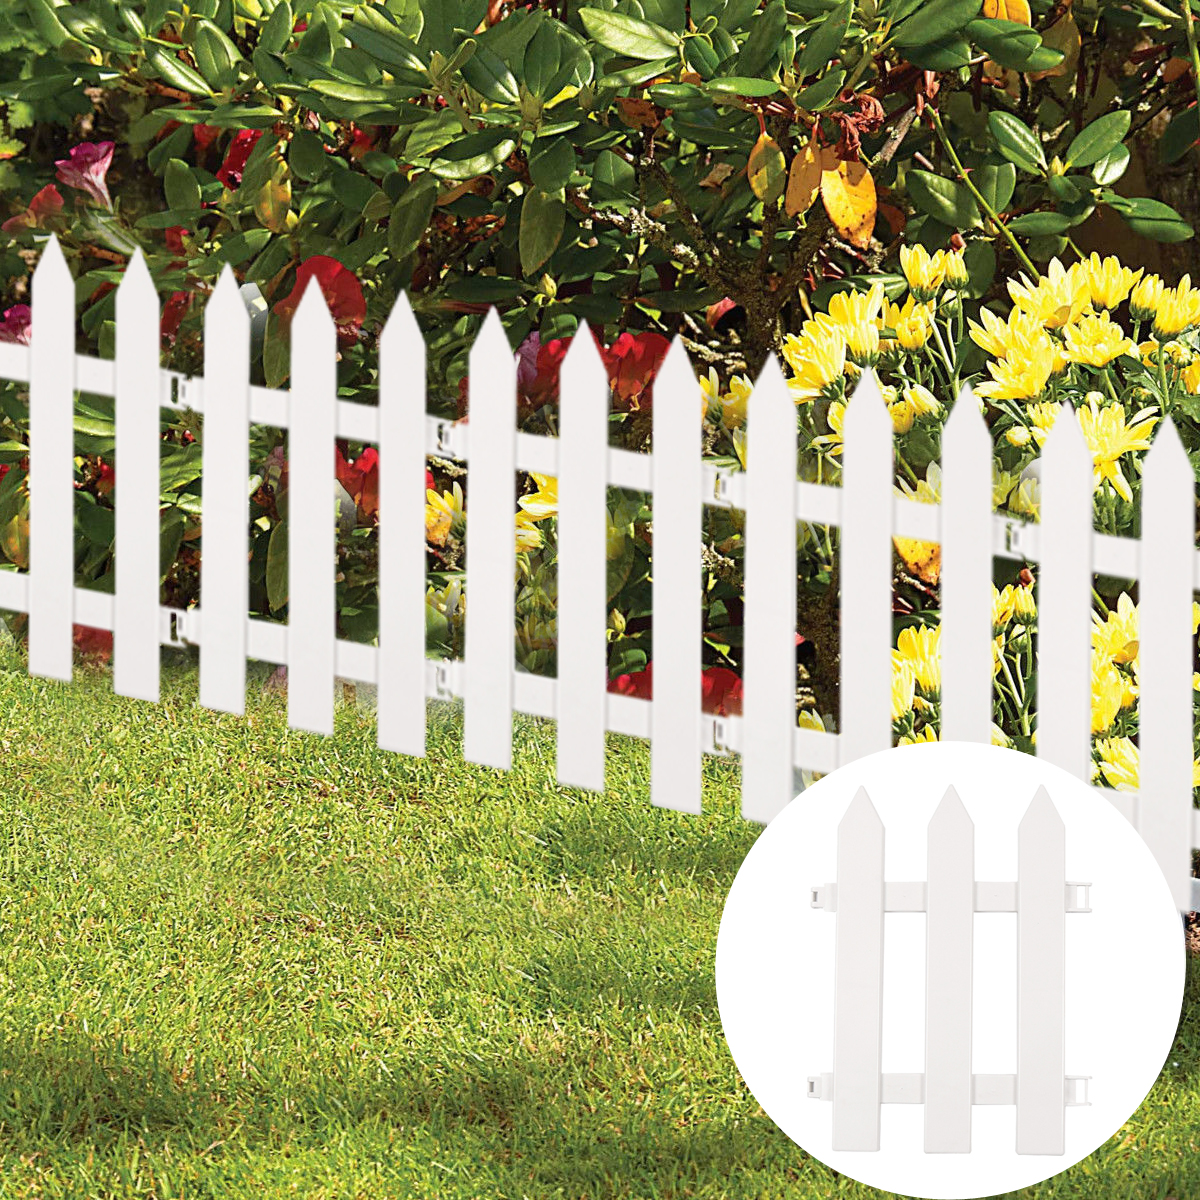 30*40CM Outdoor PVC Plastic White Fence Garden Flowerpot Parterre Fence Decoration